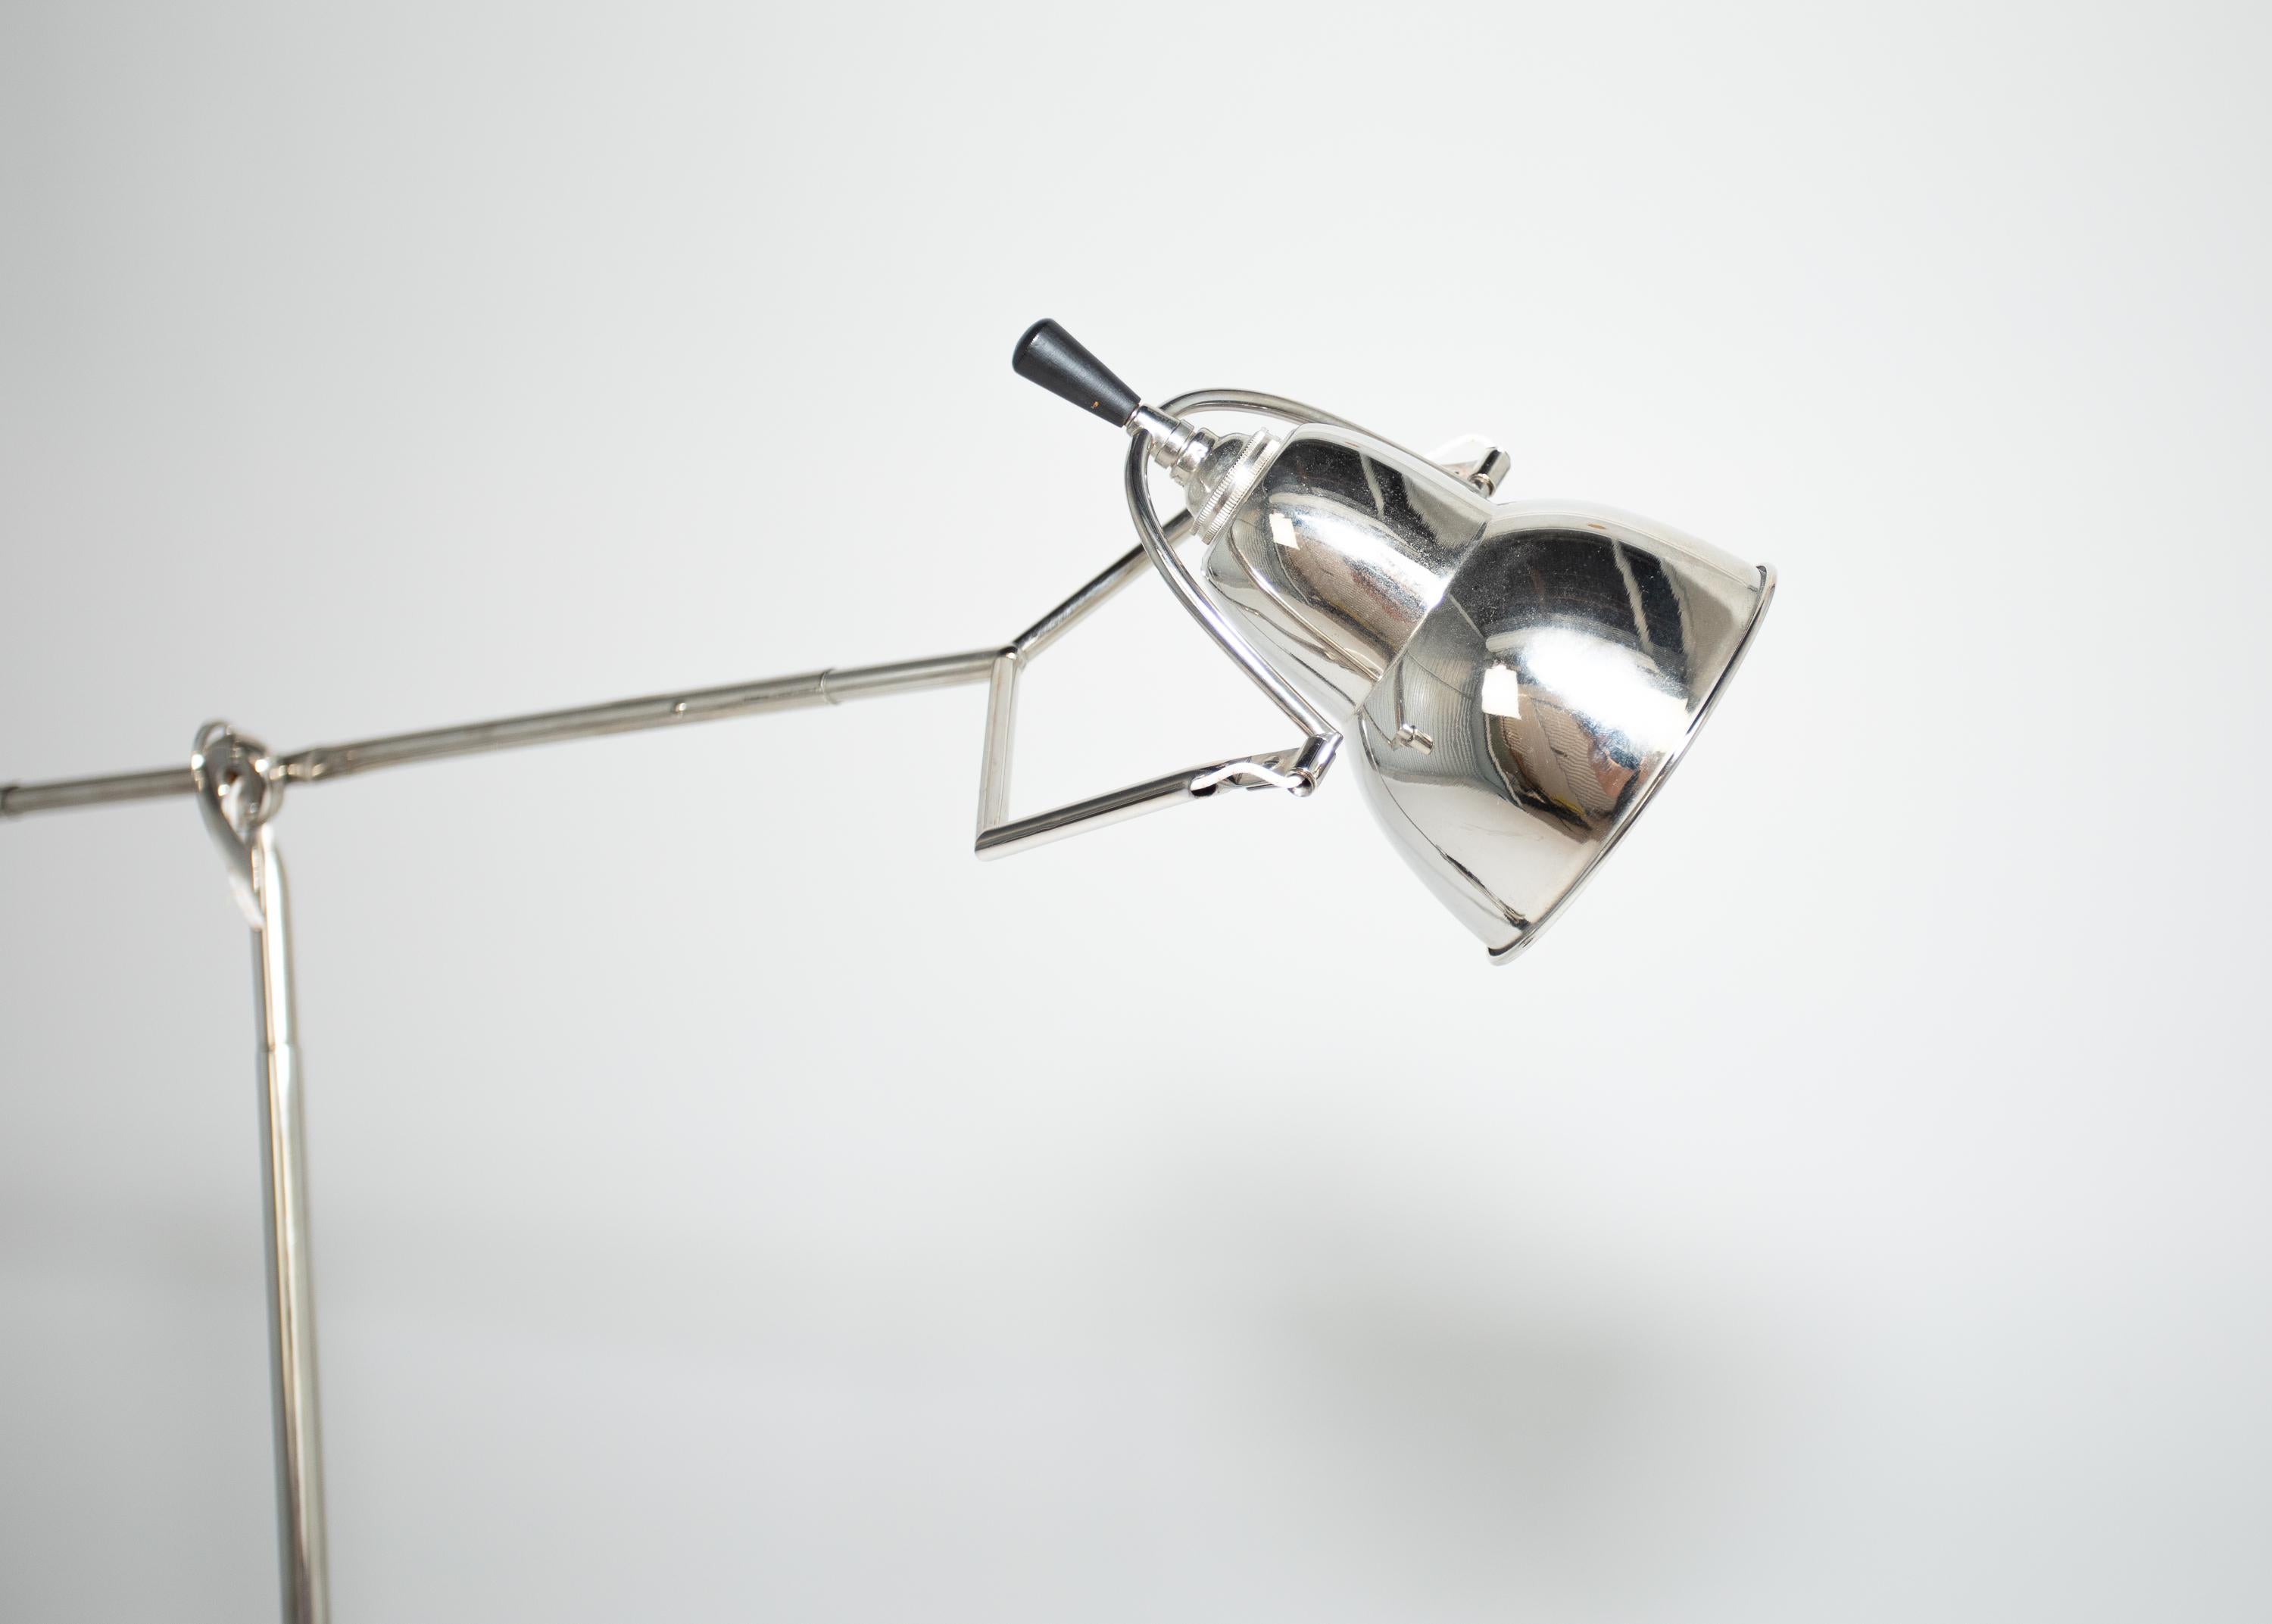 Eine originale Edouard Wilfred Buquet Tischlampe.
Schöne Nickeloberfläche
Muli positional 
Label vorhanden